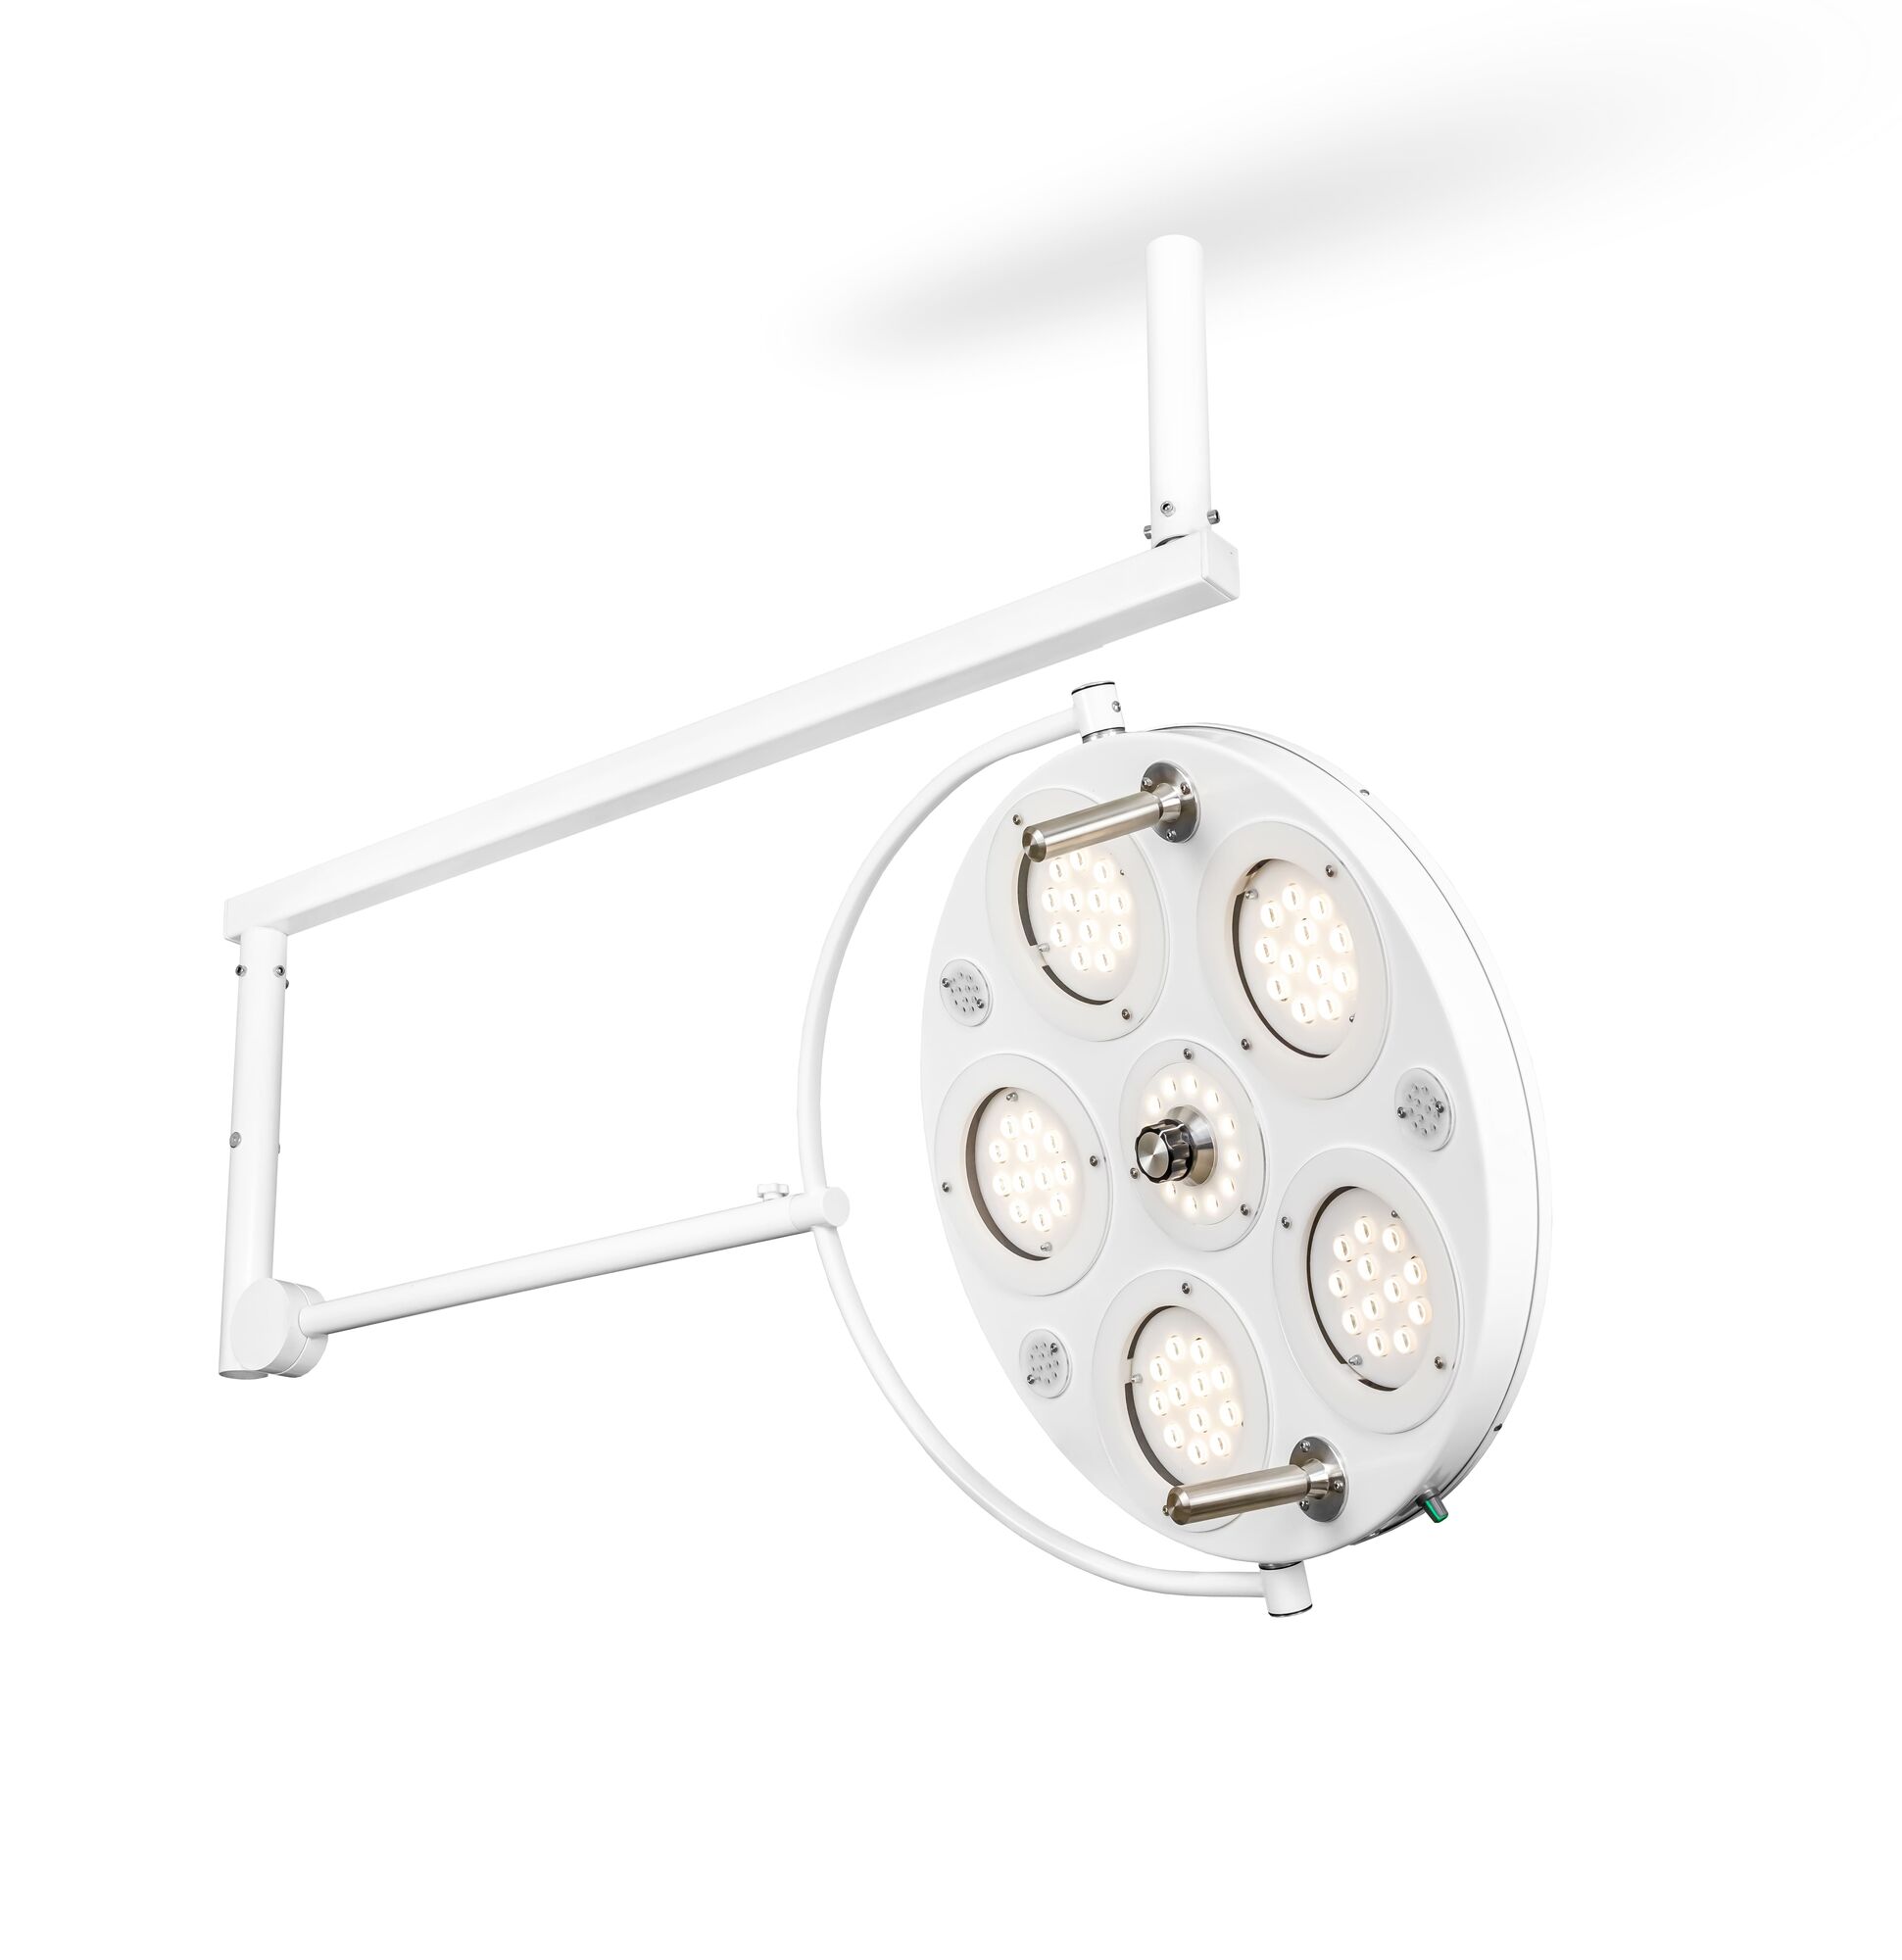 Хирургический медицинский светильник FotonFLY 6М-A с ИБП